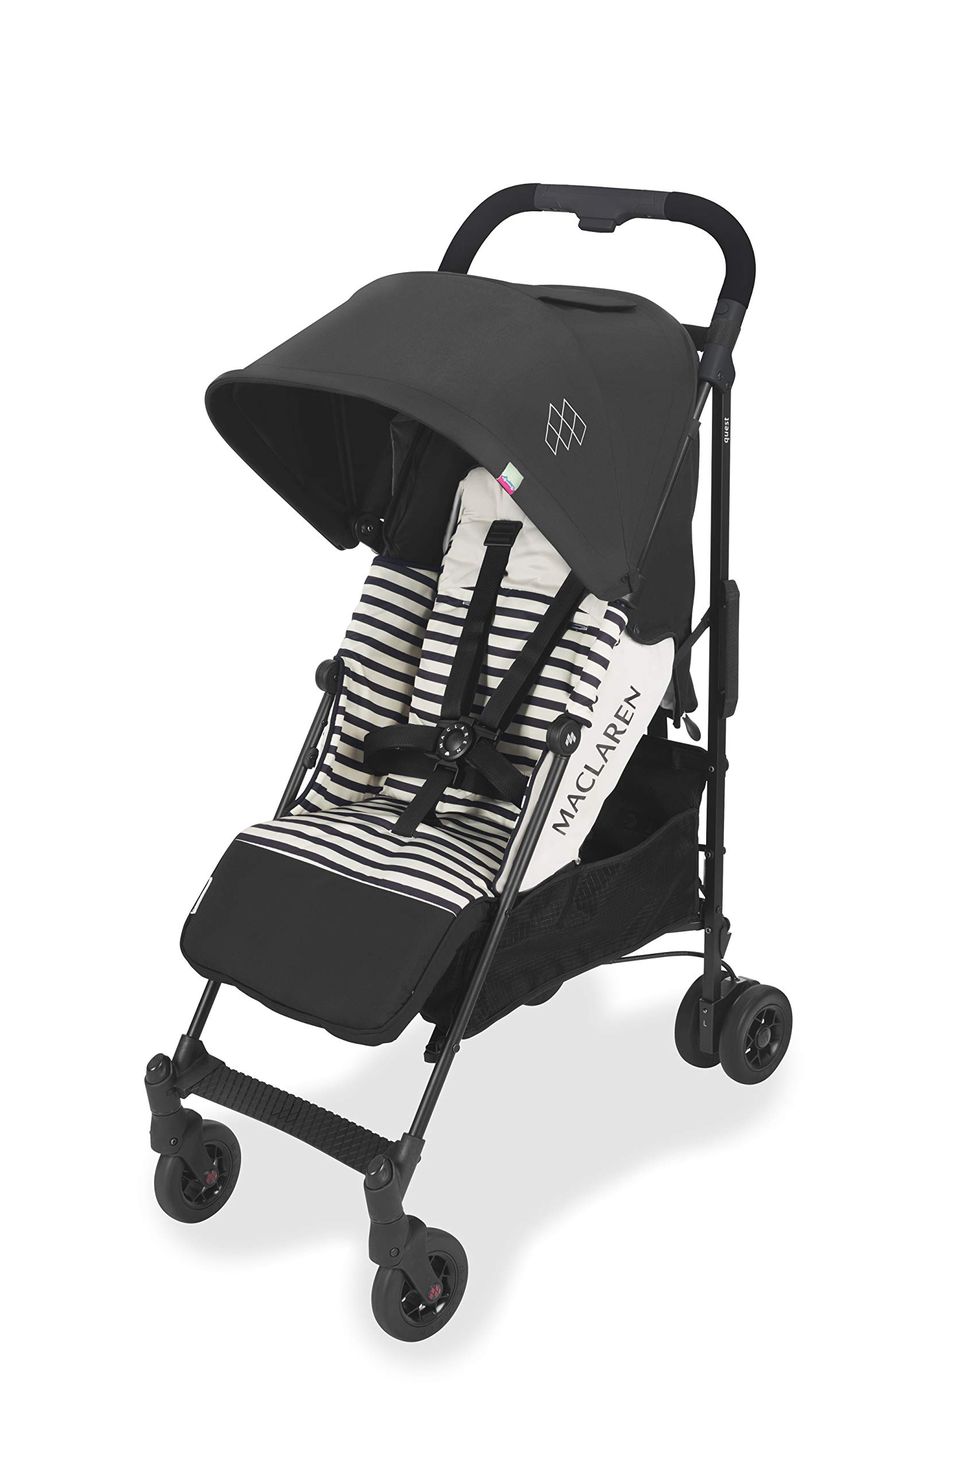 Las mejores sillas de paseo ligeras para bebés de 2020